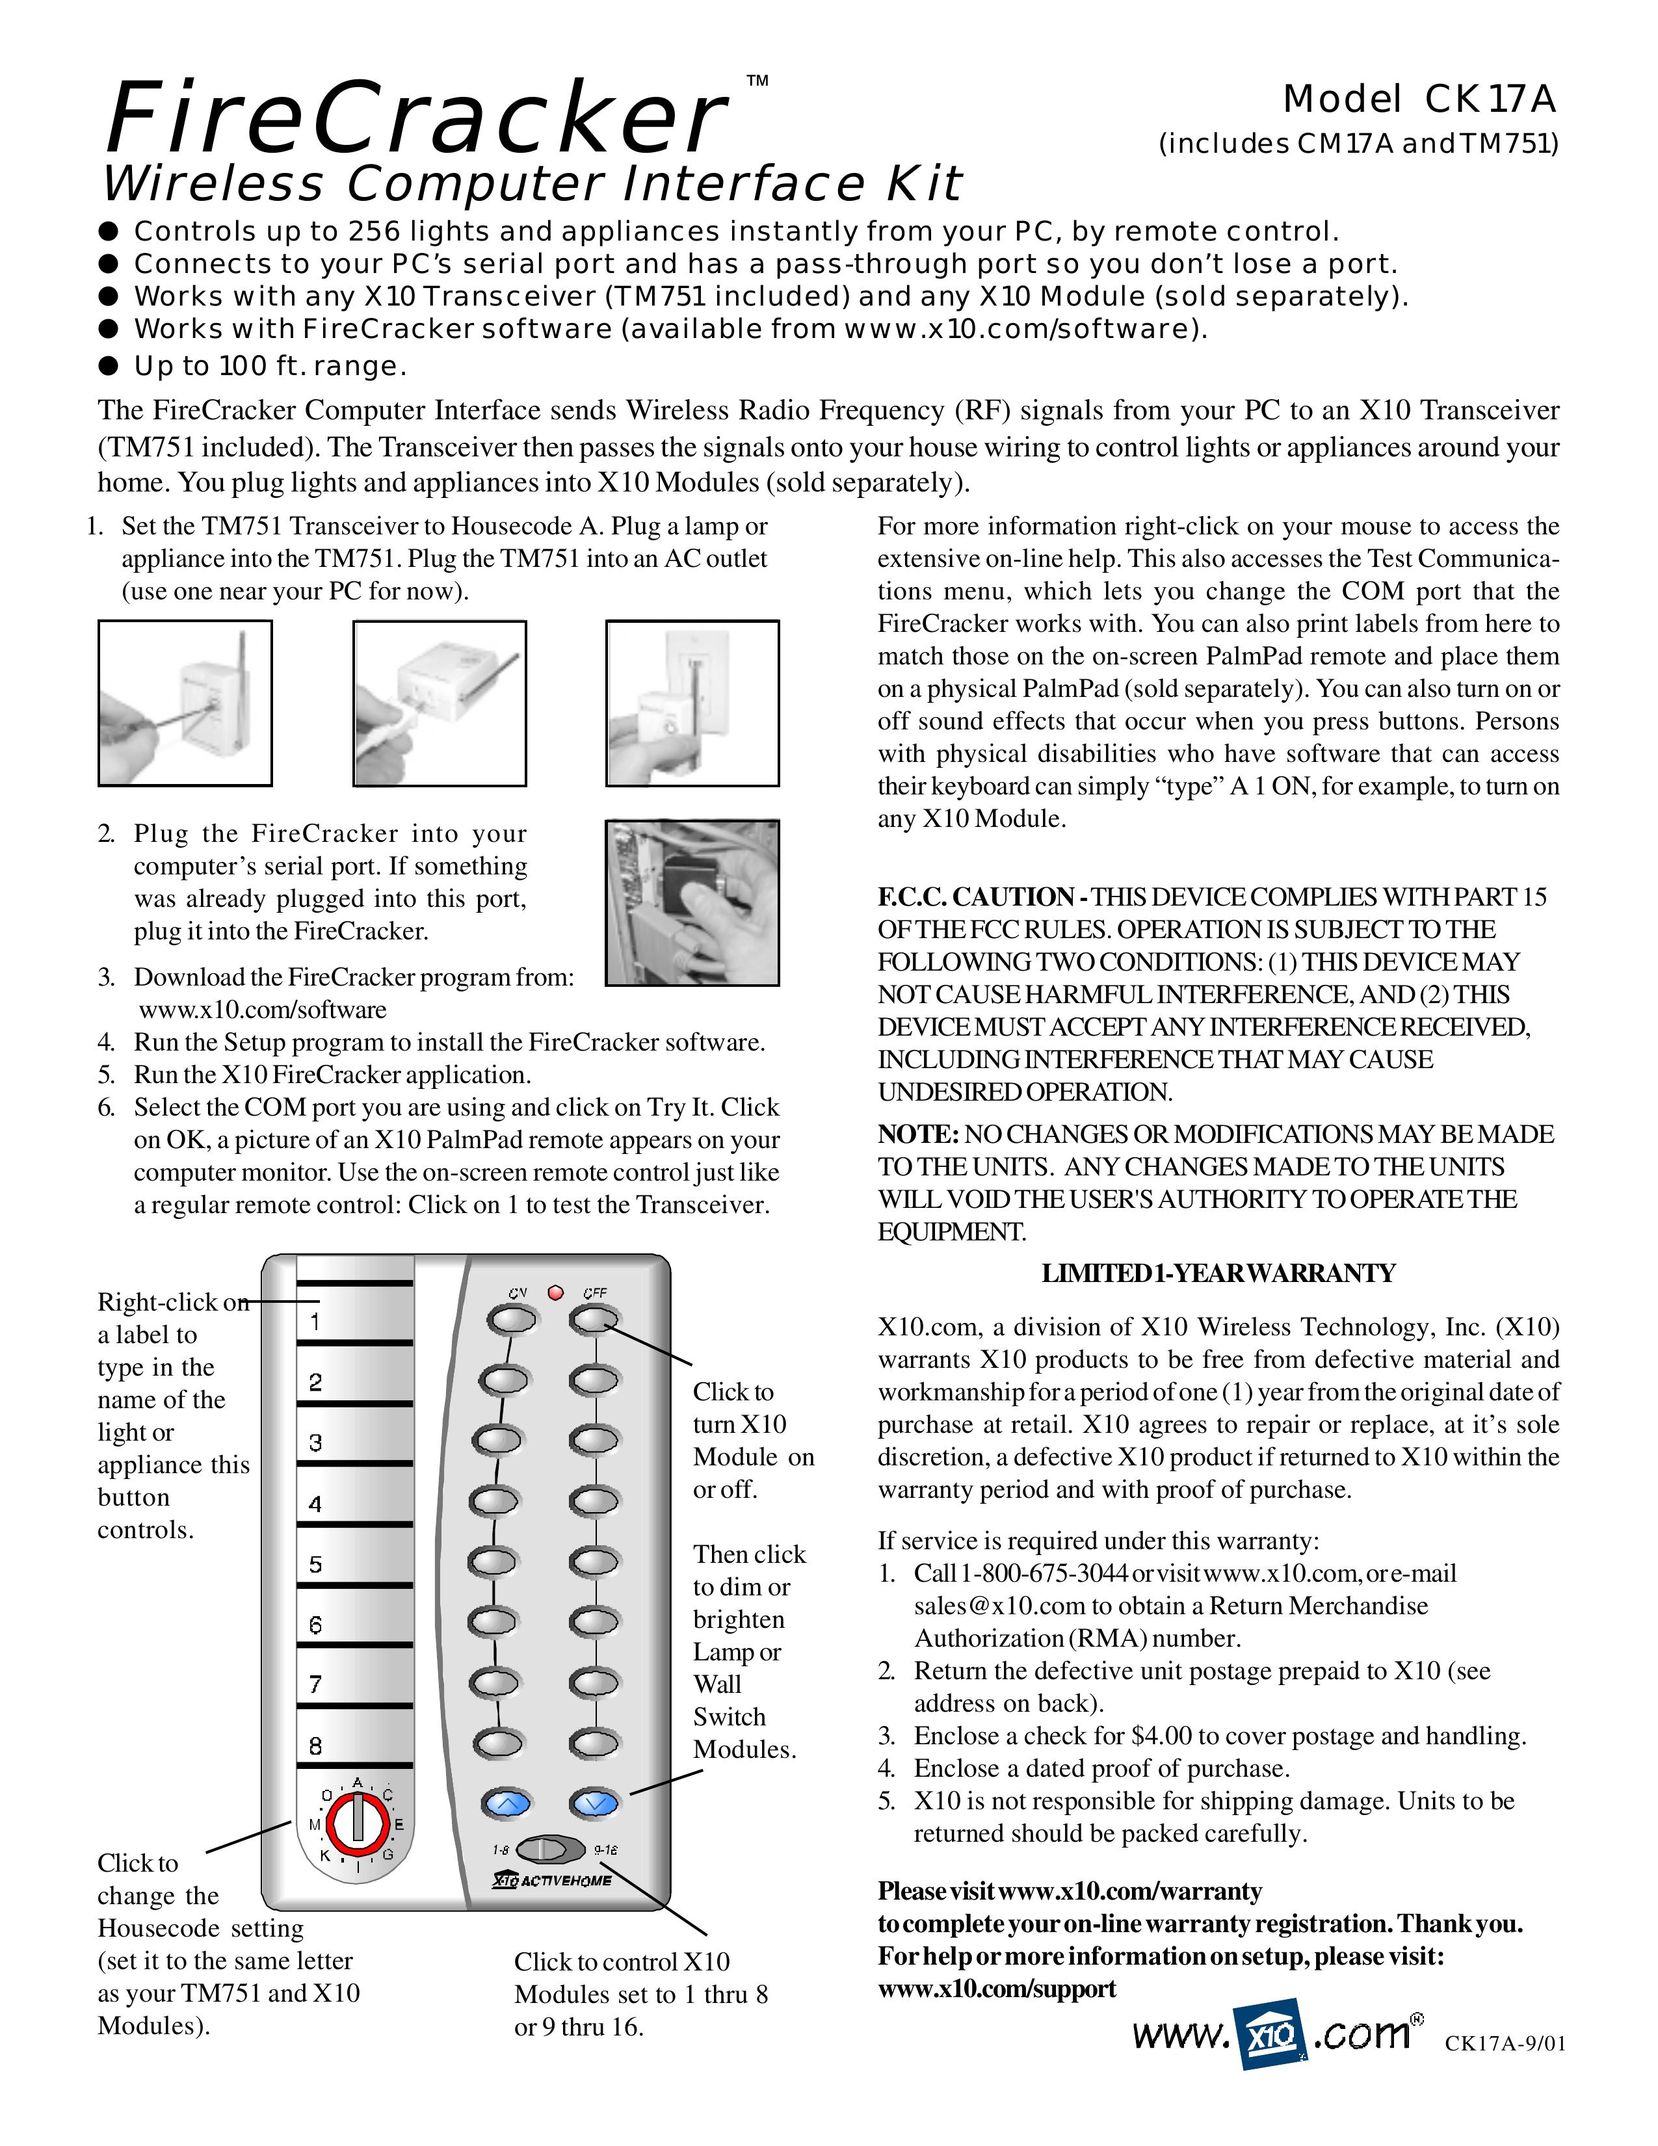 X10 Wireless Technology CK17A Network Card User Manual